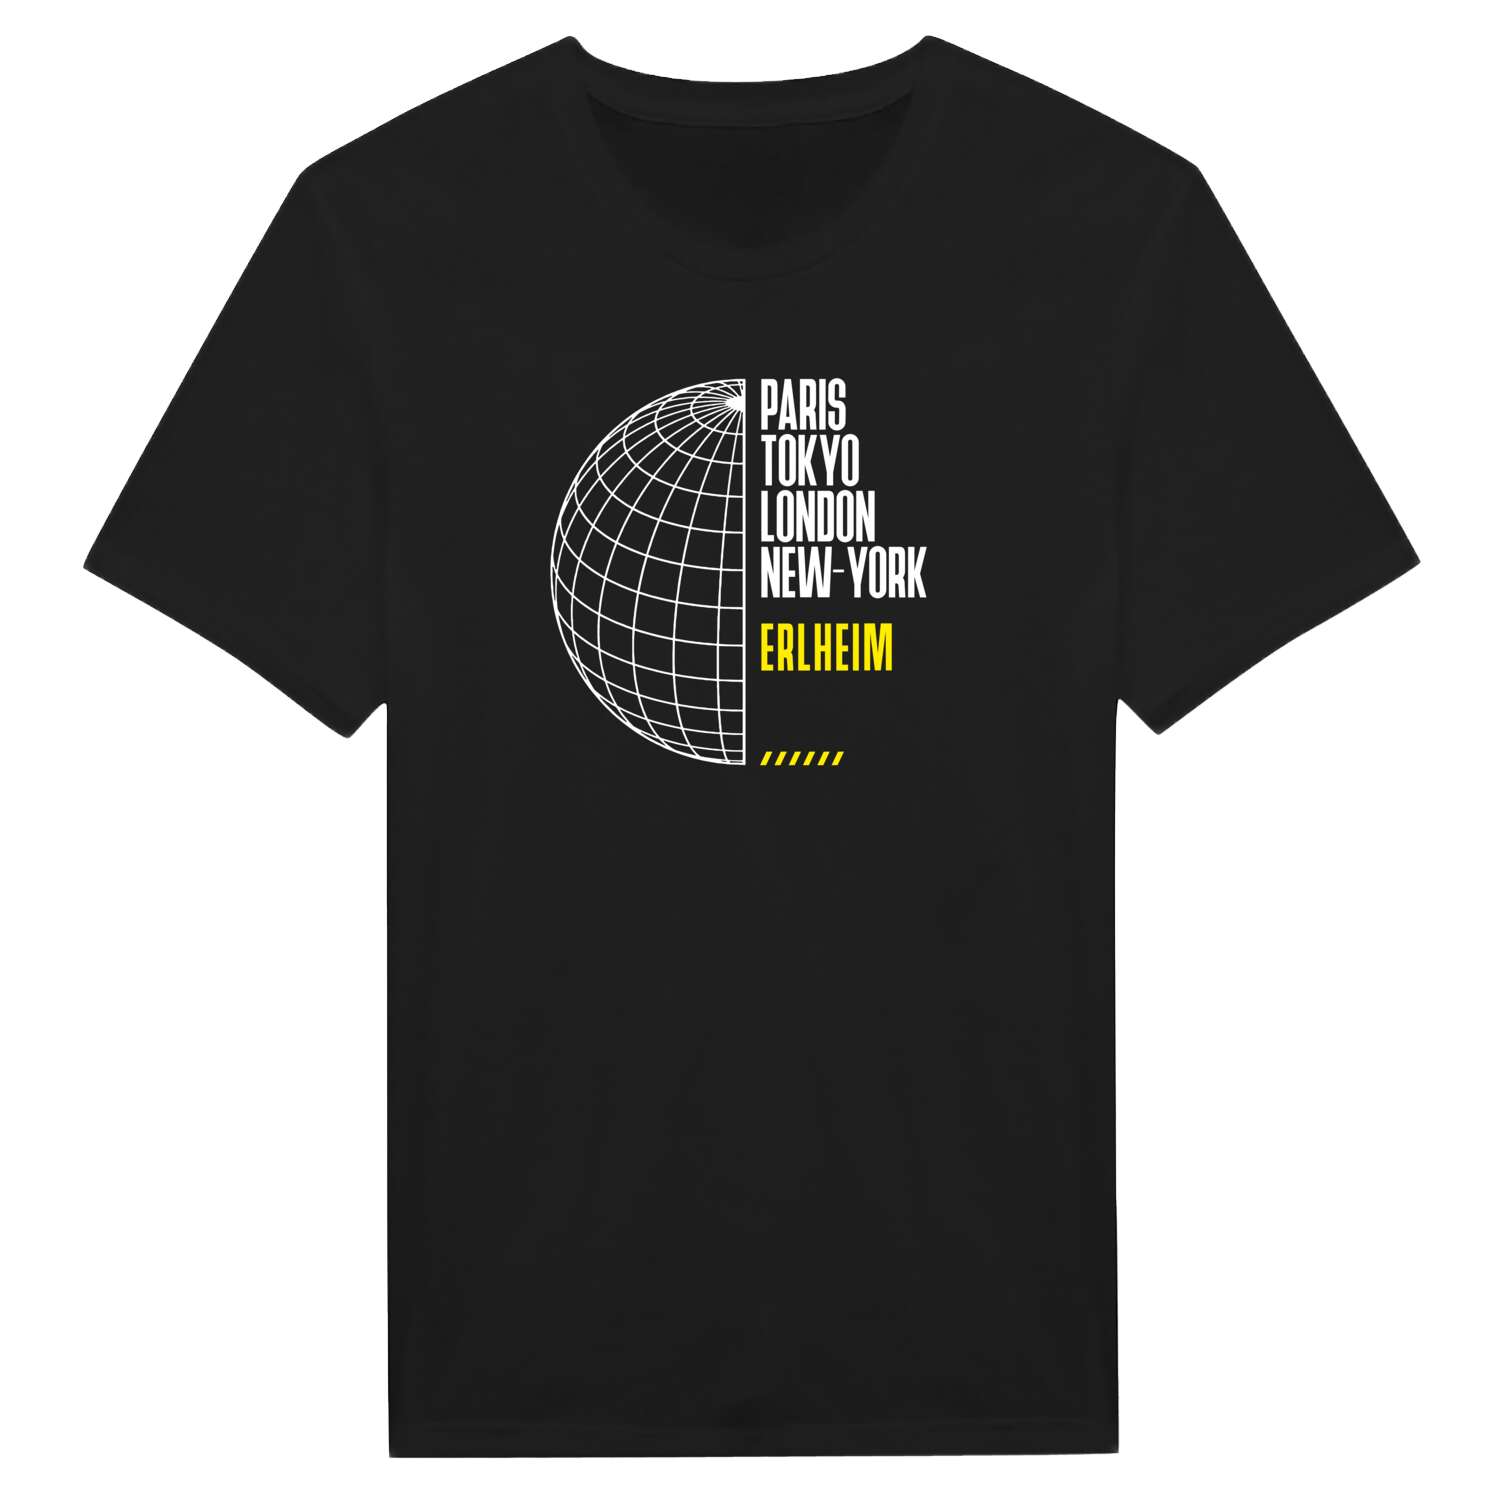 Erlheim T-Shirt »Paris Tokyo London«